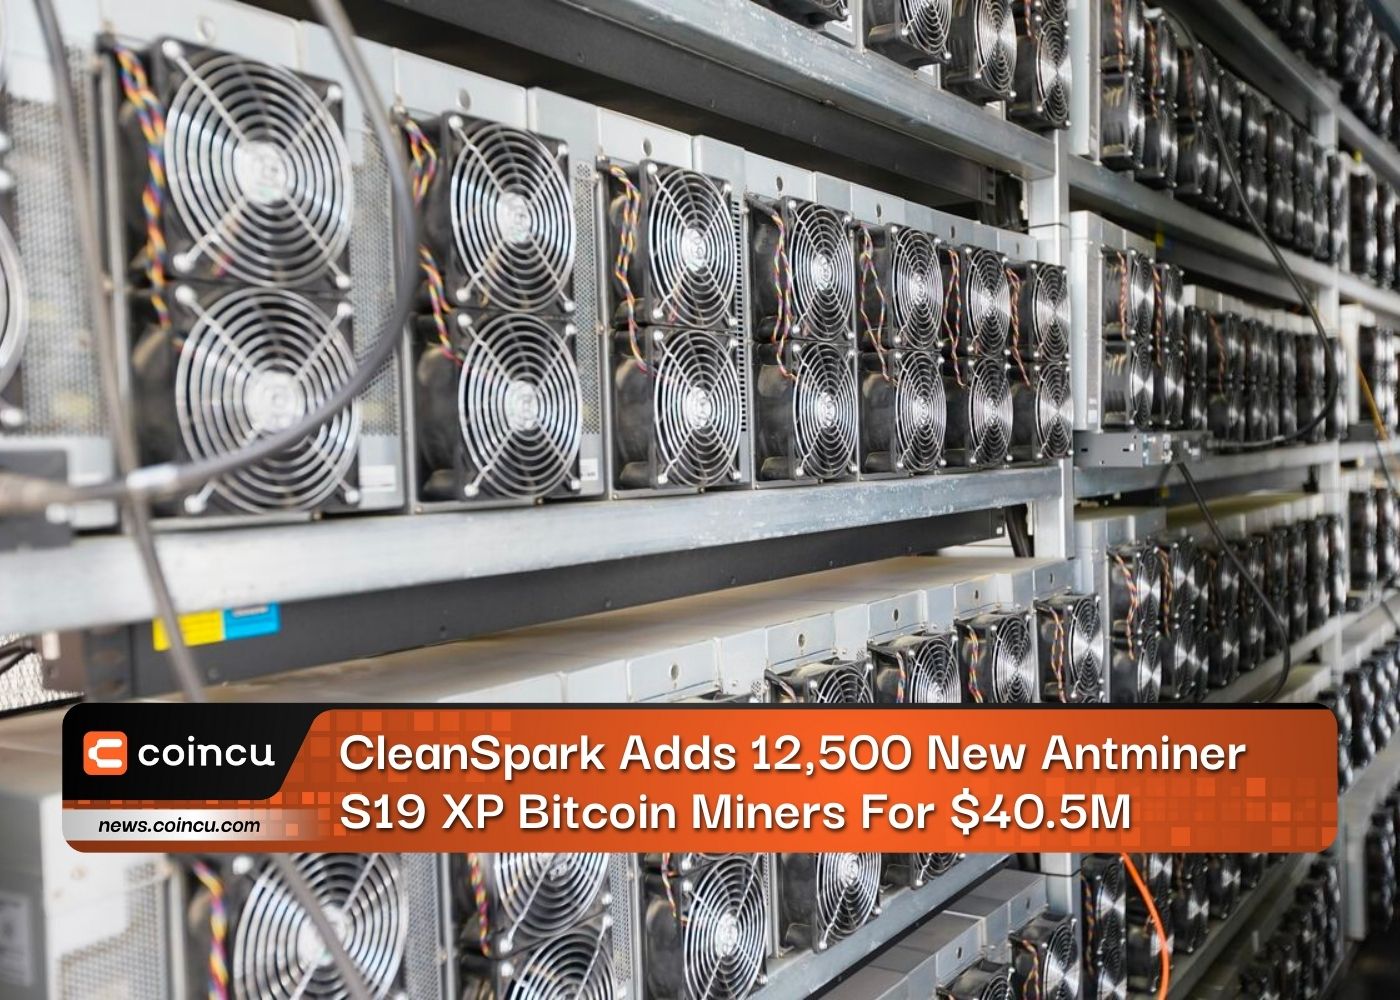 CleanSpark ajoute 12,500 19 nouveaux mineurs Bitcoin Antminer S40.5 XP pour XNUMX millions de dollars